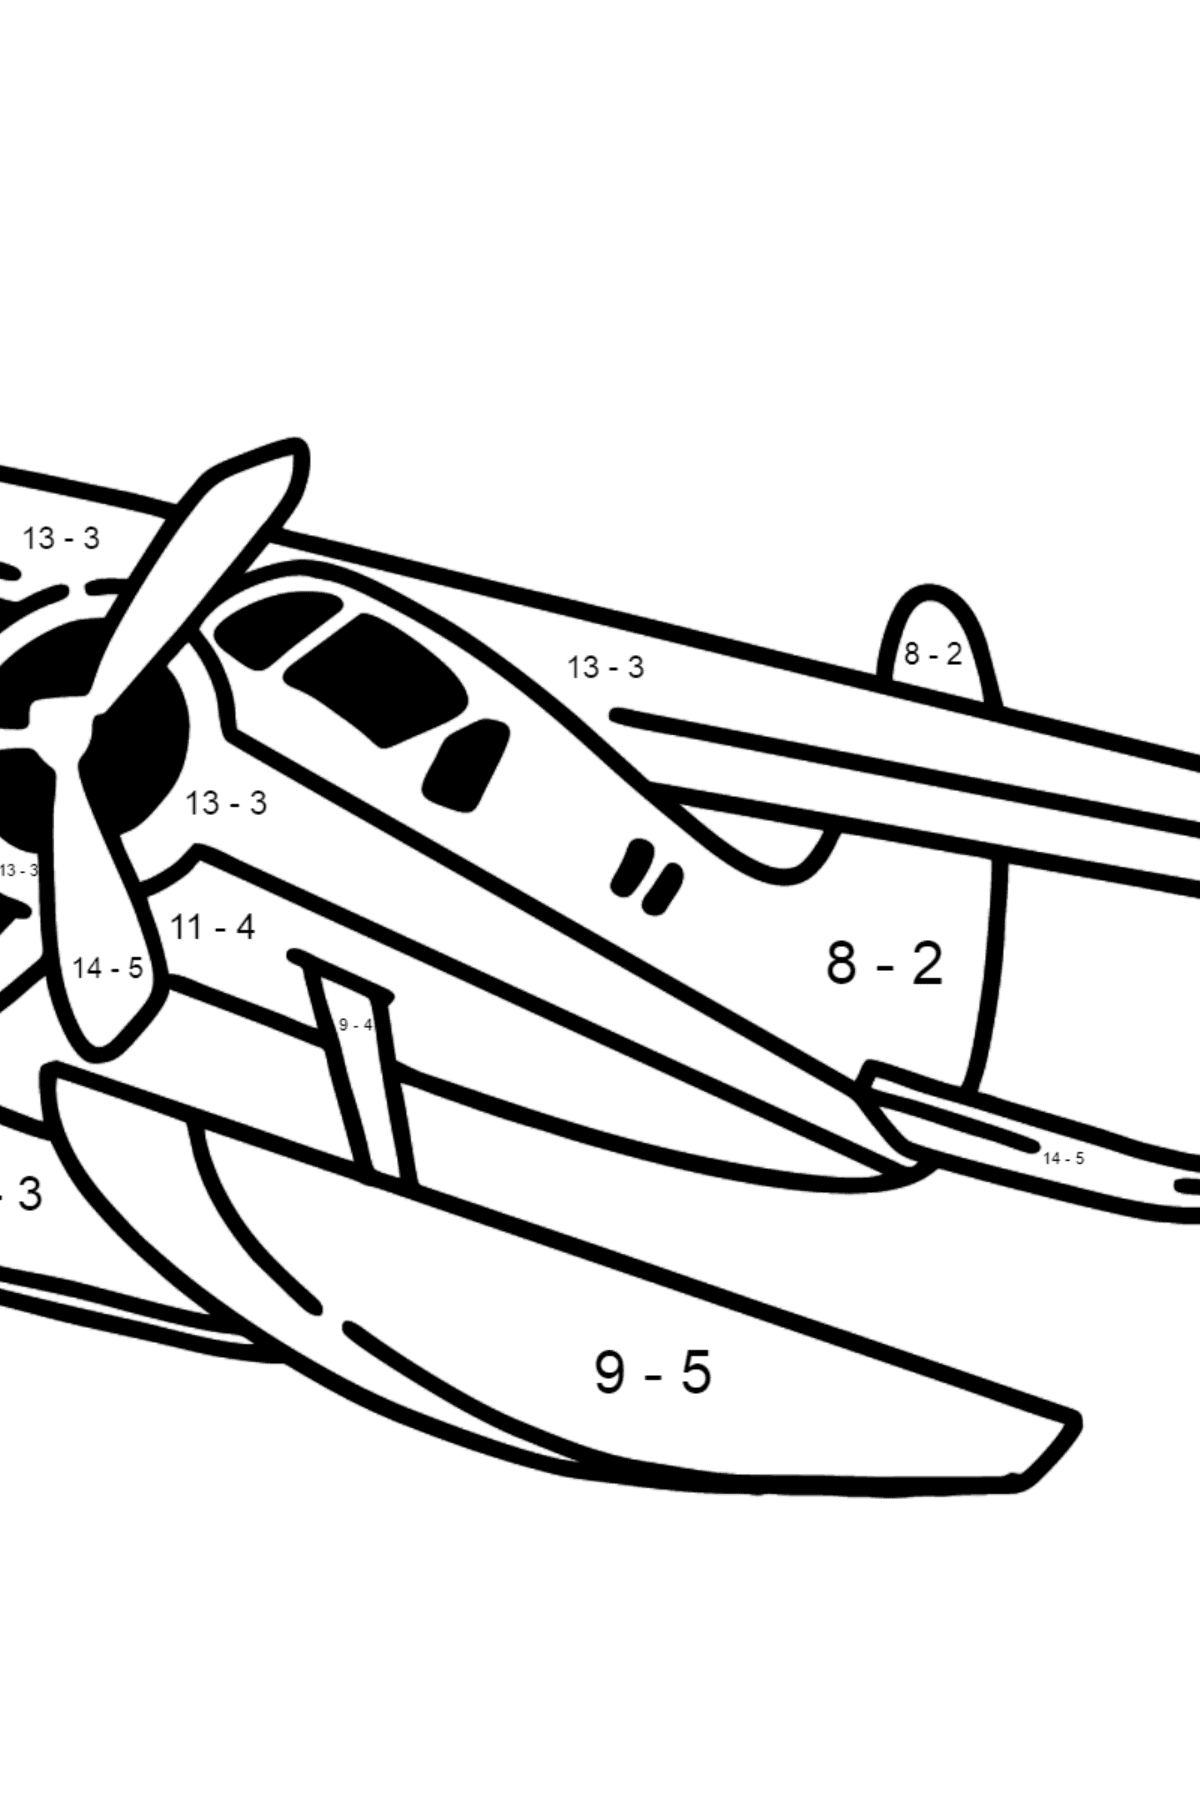 Desenho para colorir do Jet Airplane BE-200 - Colorindo com Matemática - Subtração para Crianças